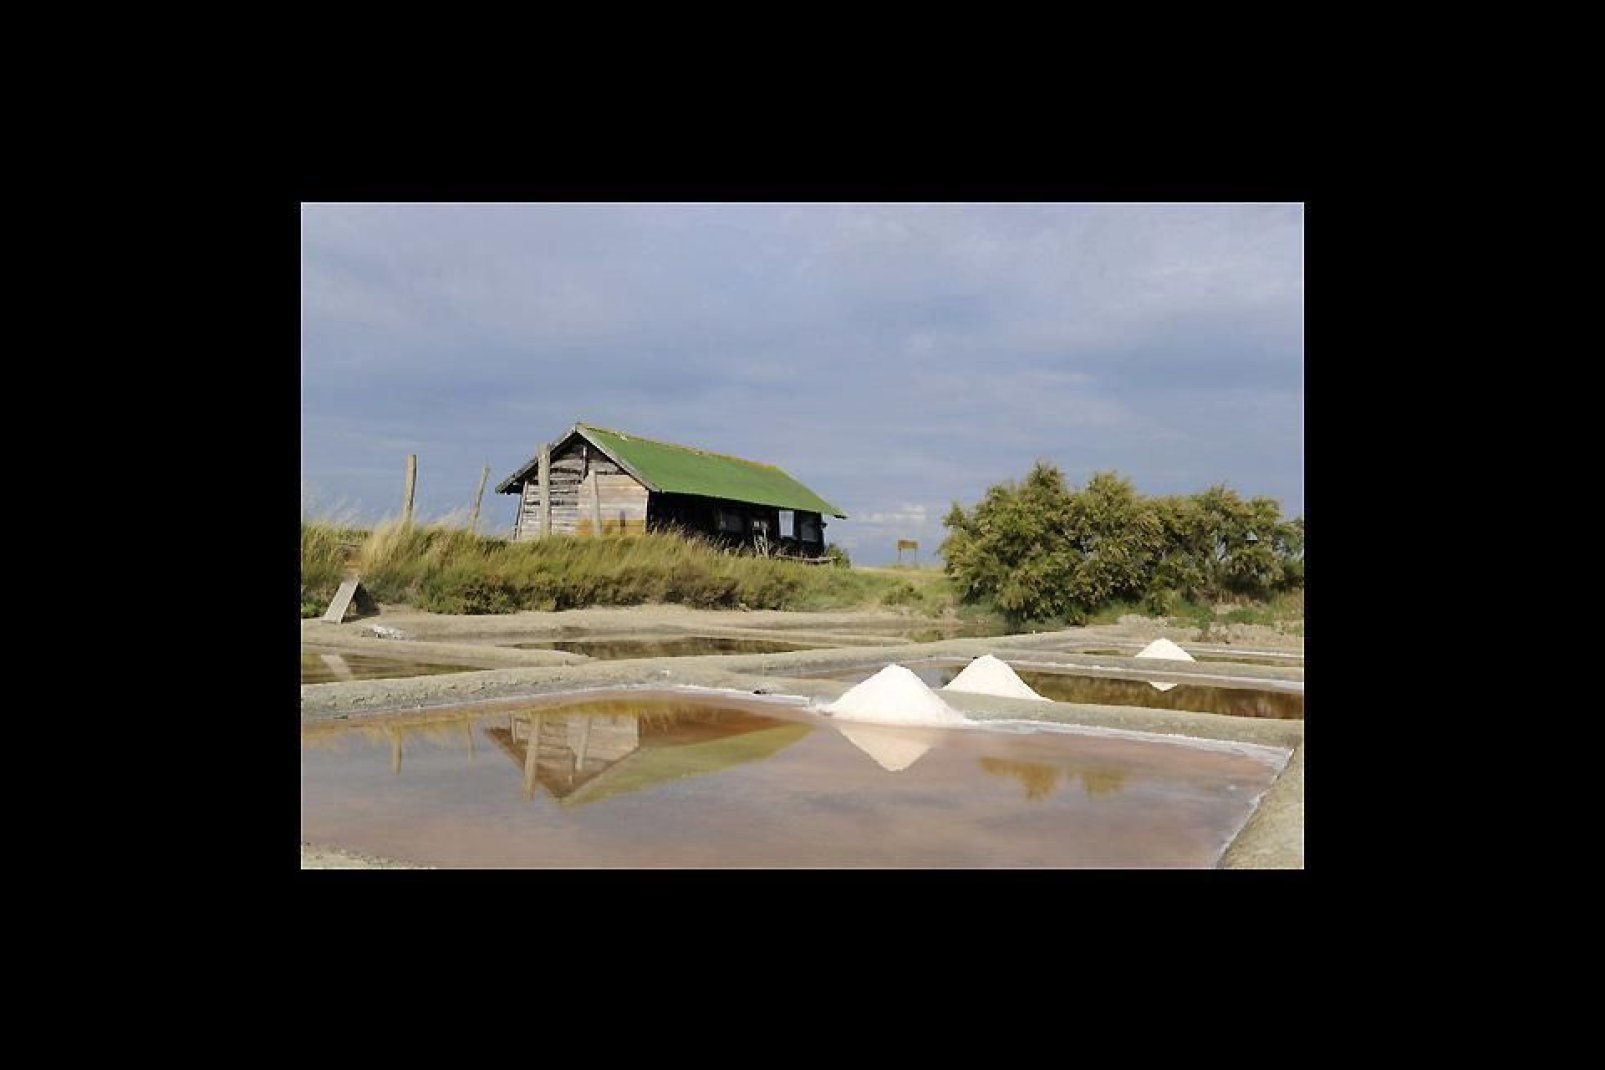 A quelques kilomètres au nord de la ville, les Salines sont une zone naturelle protégée où l'on peut observer les sauniers récolter du sel.